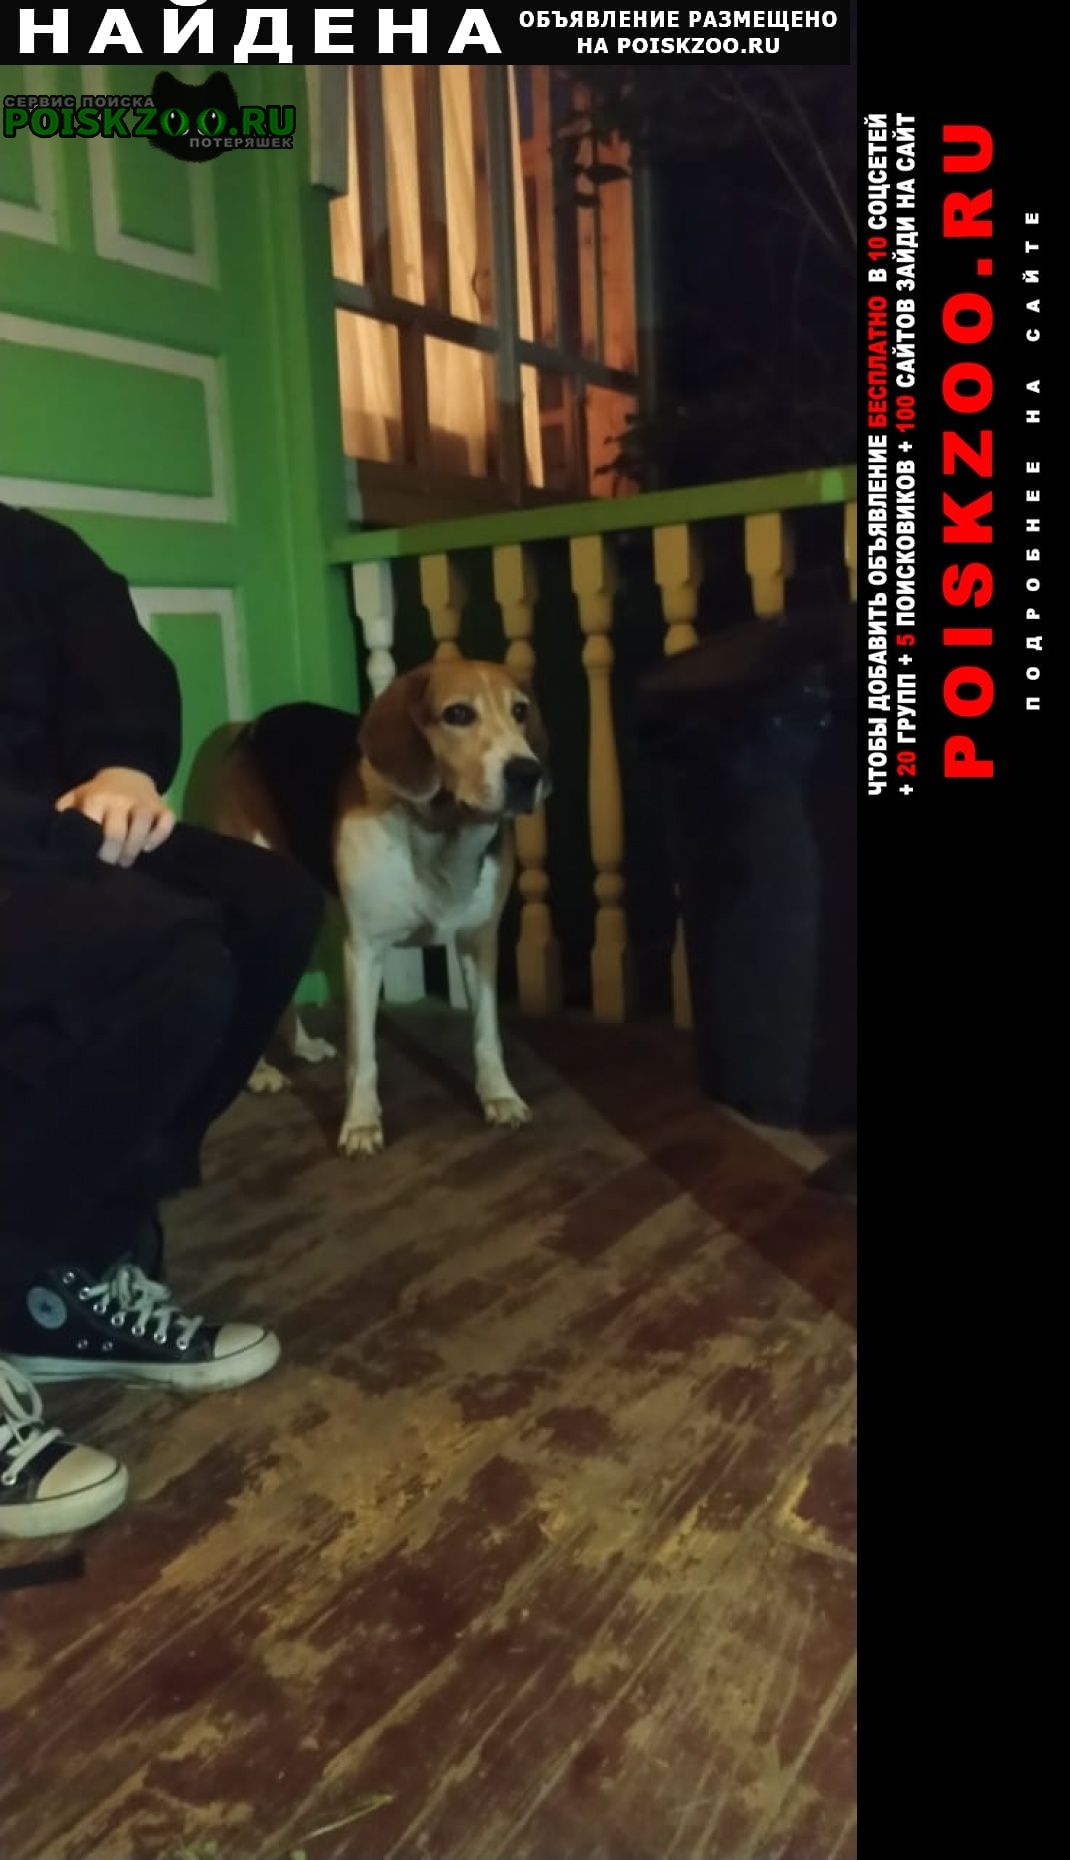 Найдена собака кобель бигль около 8 лет Чехов